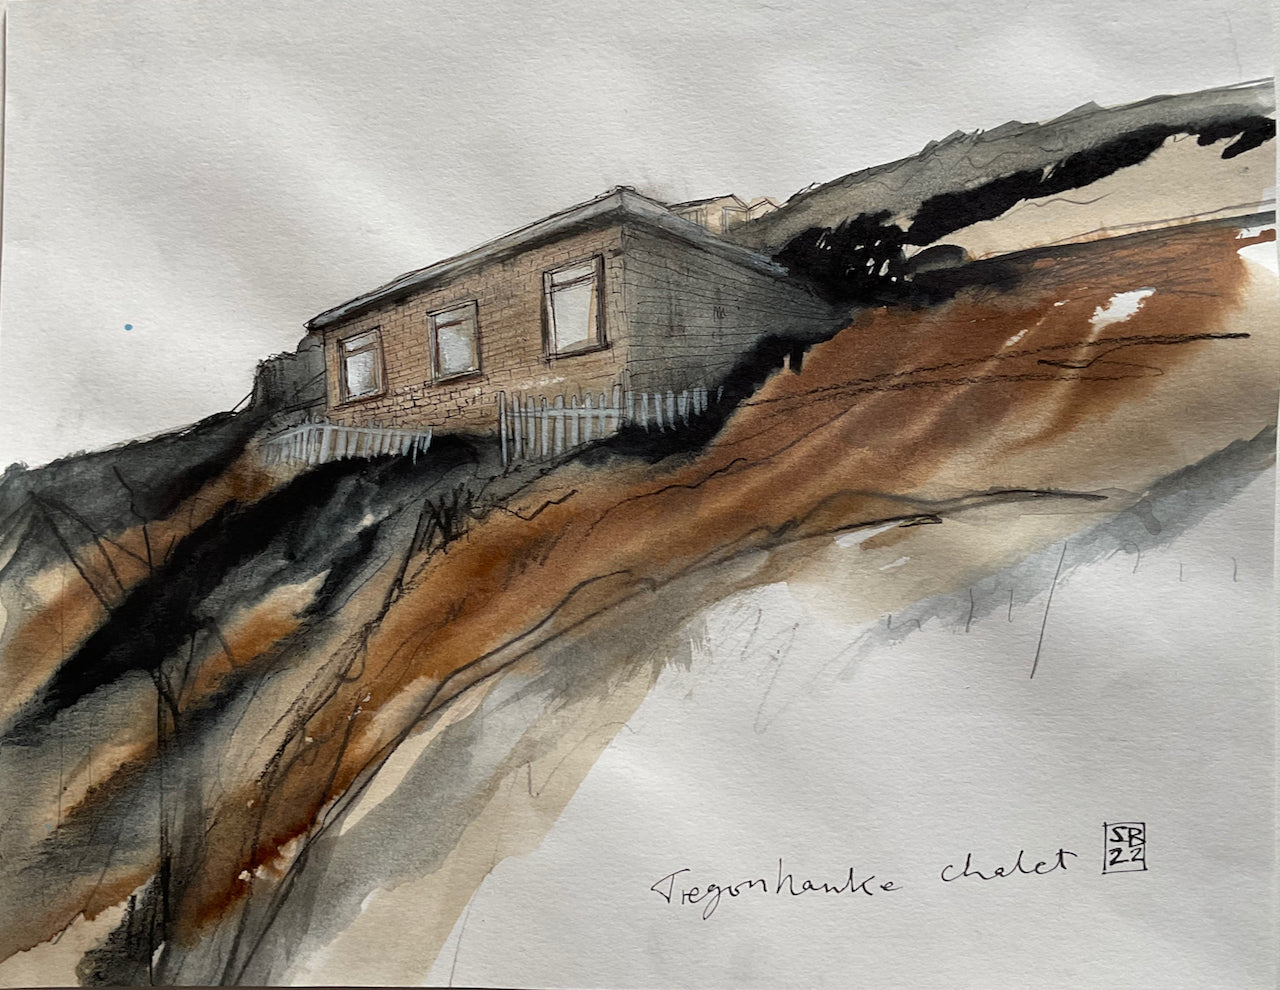 Artist Steven Buckler Tragonhawke Chalet nestled into hillside with brown and black ink